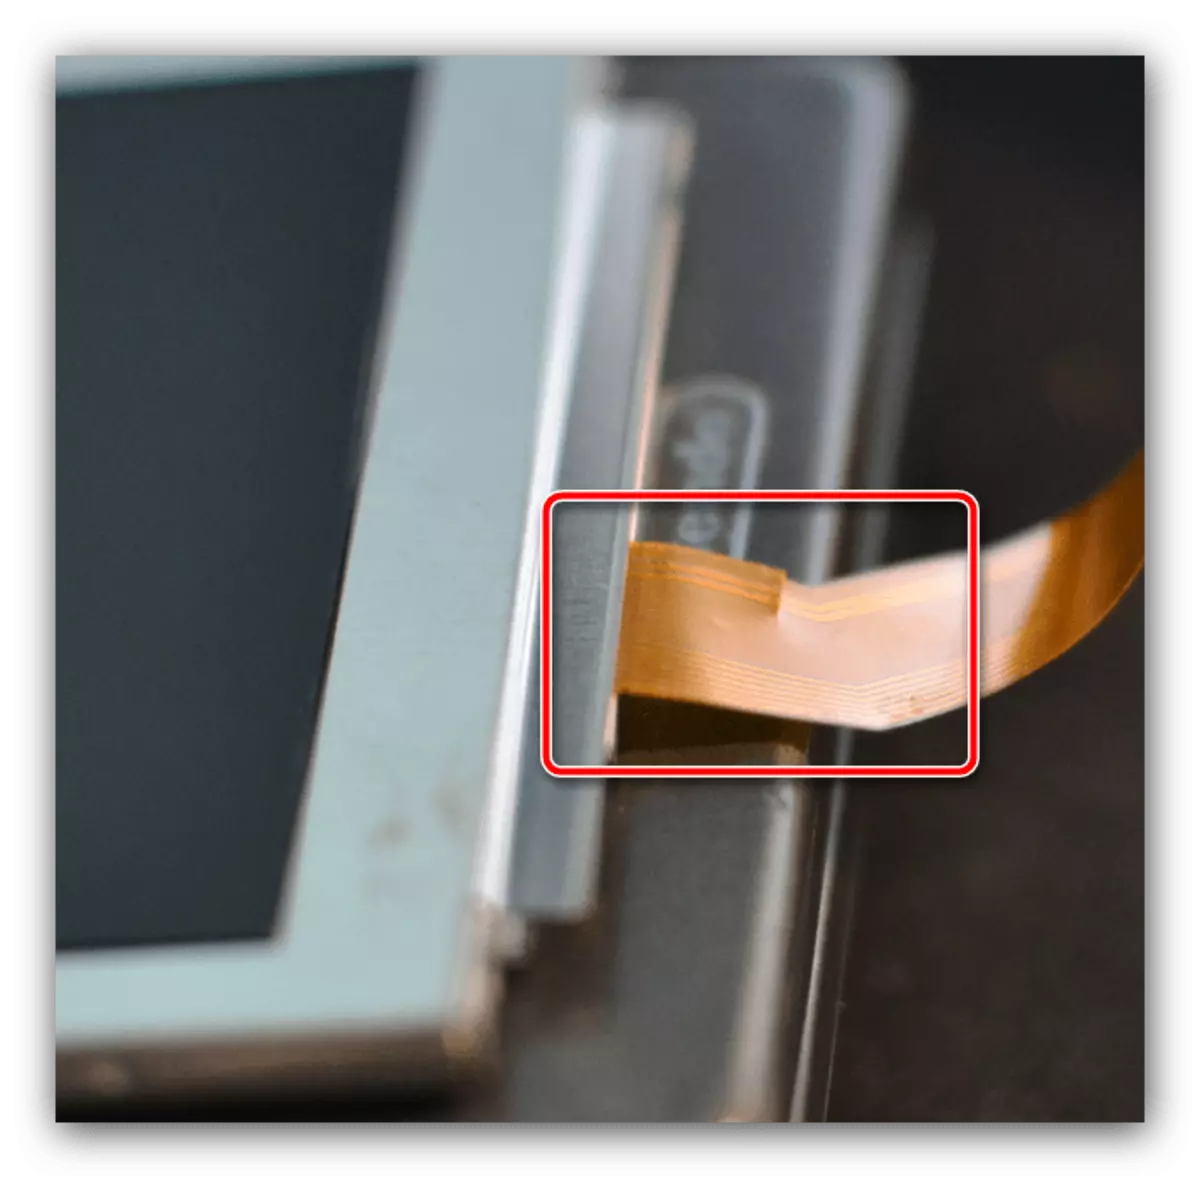 Síň Plume objasnit důvody kortexu nefunguje klávesnice v laptopu Samsung